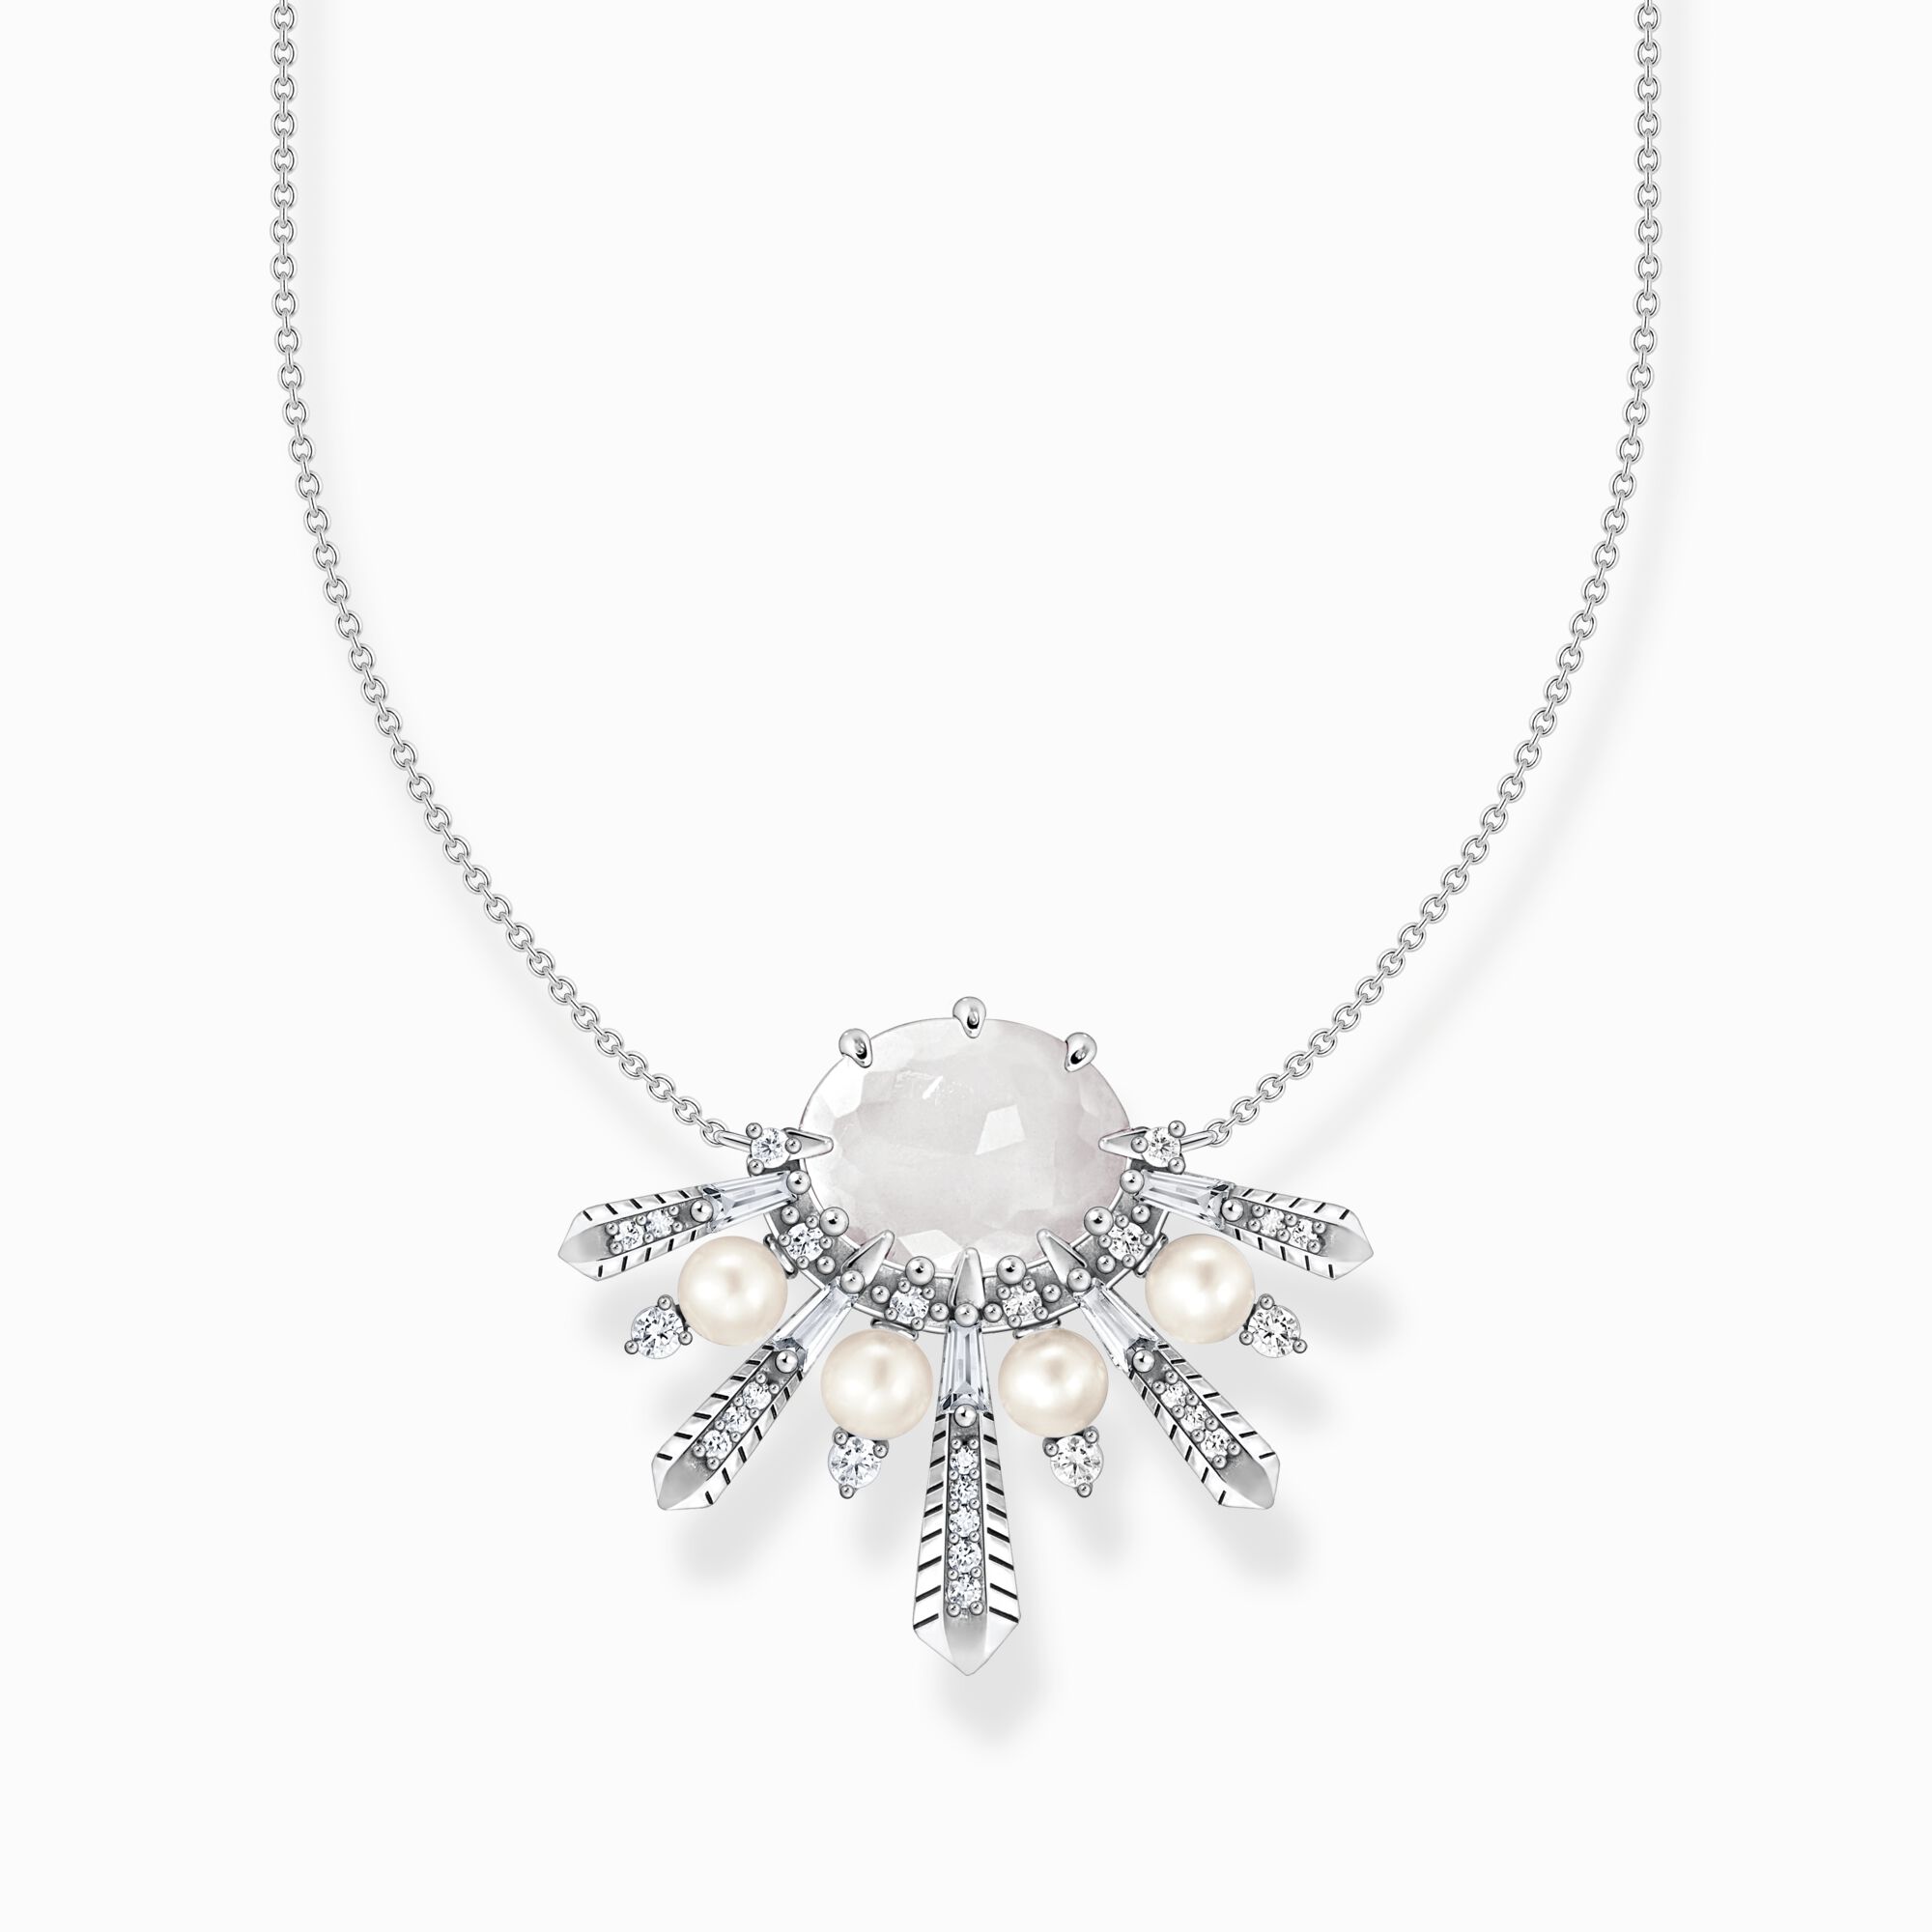 Collier für Damen: Silber, Steine und Perlen | THOMAS SABO